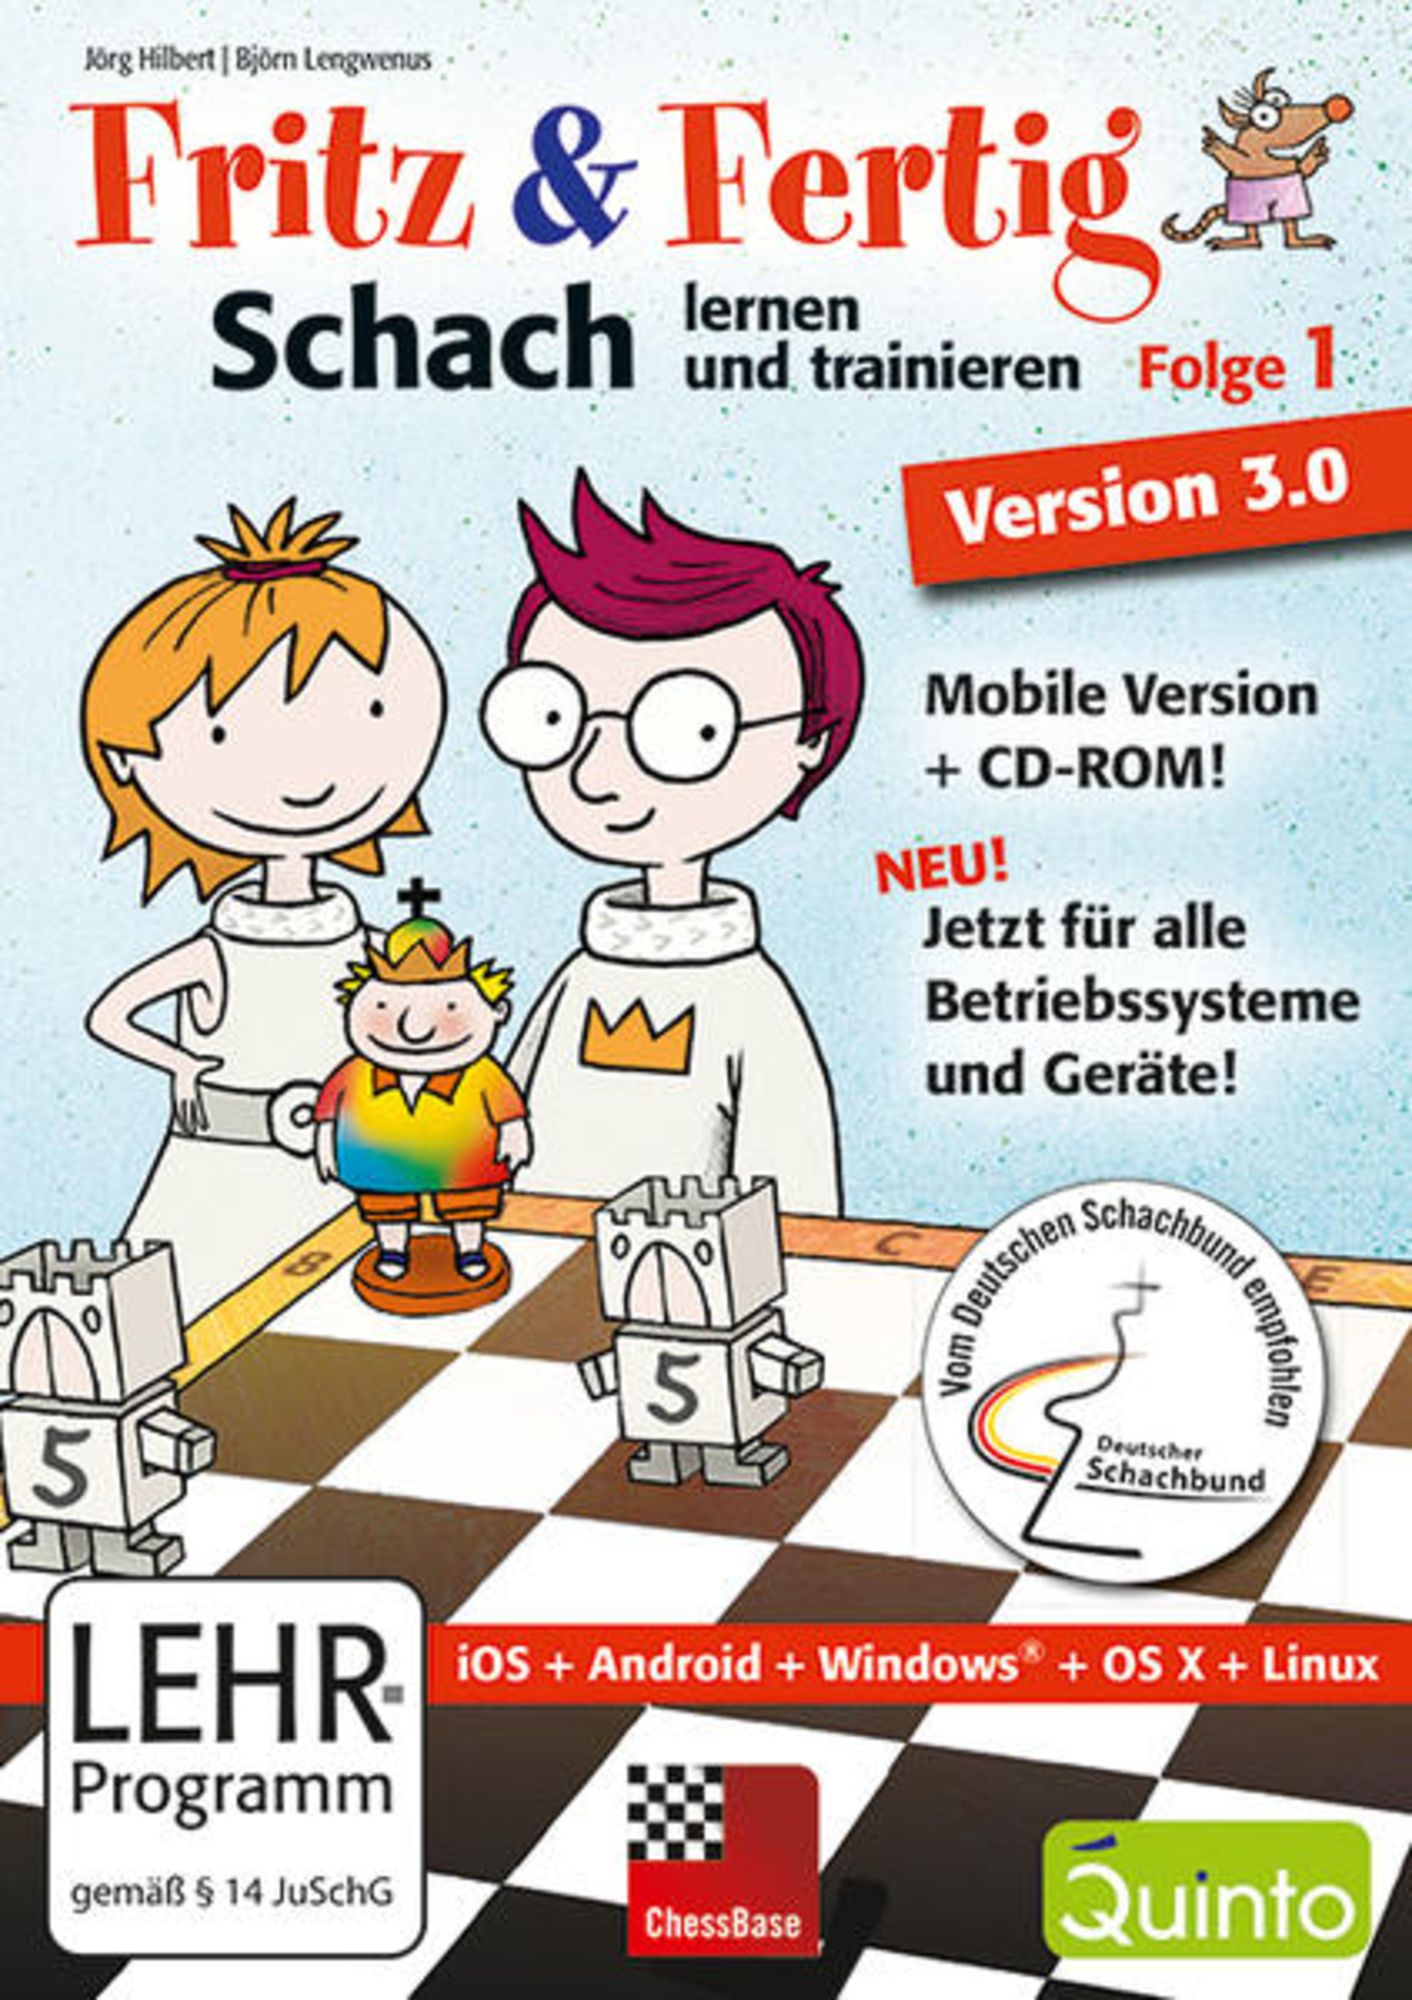 Fritz and Fertig! 1 - Schach lernen und trainieren Version 3.0 (Mobile Version + CD-ROM für iPad, Windows, Android Tablets, Linux, Mac)